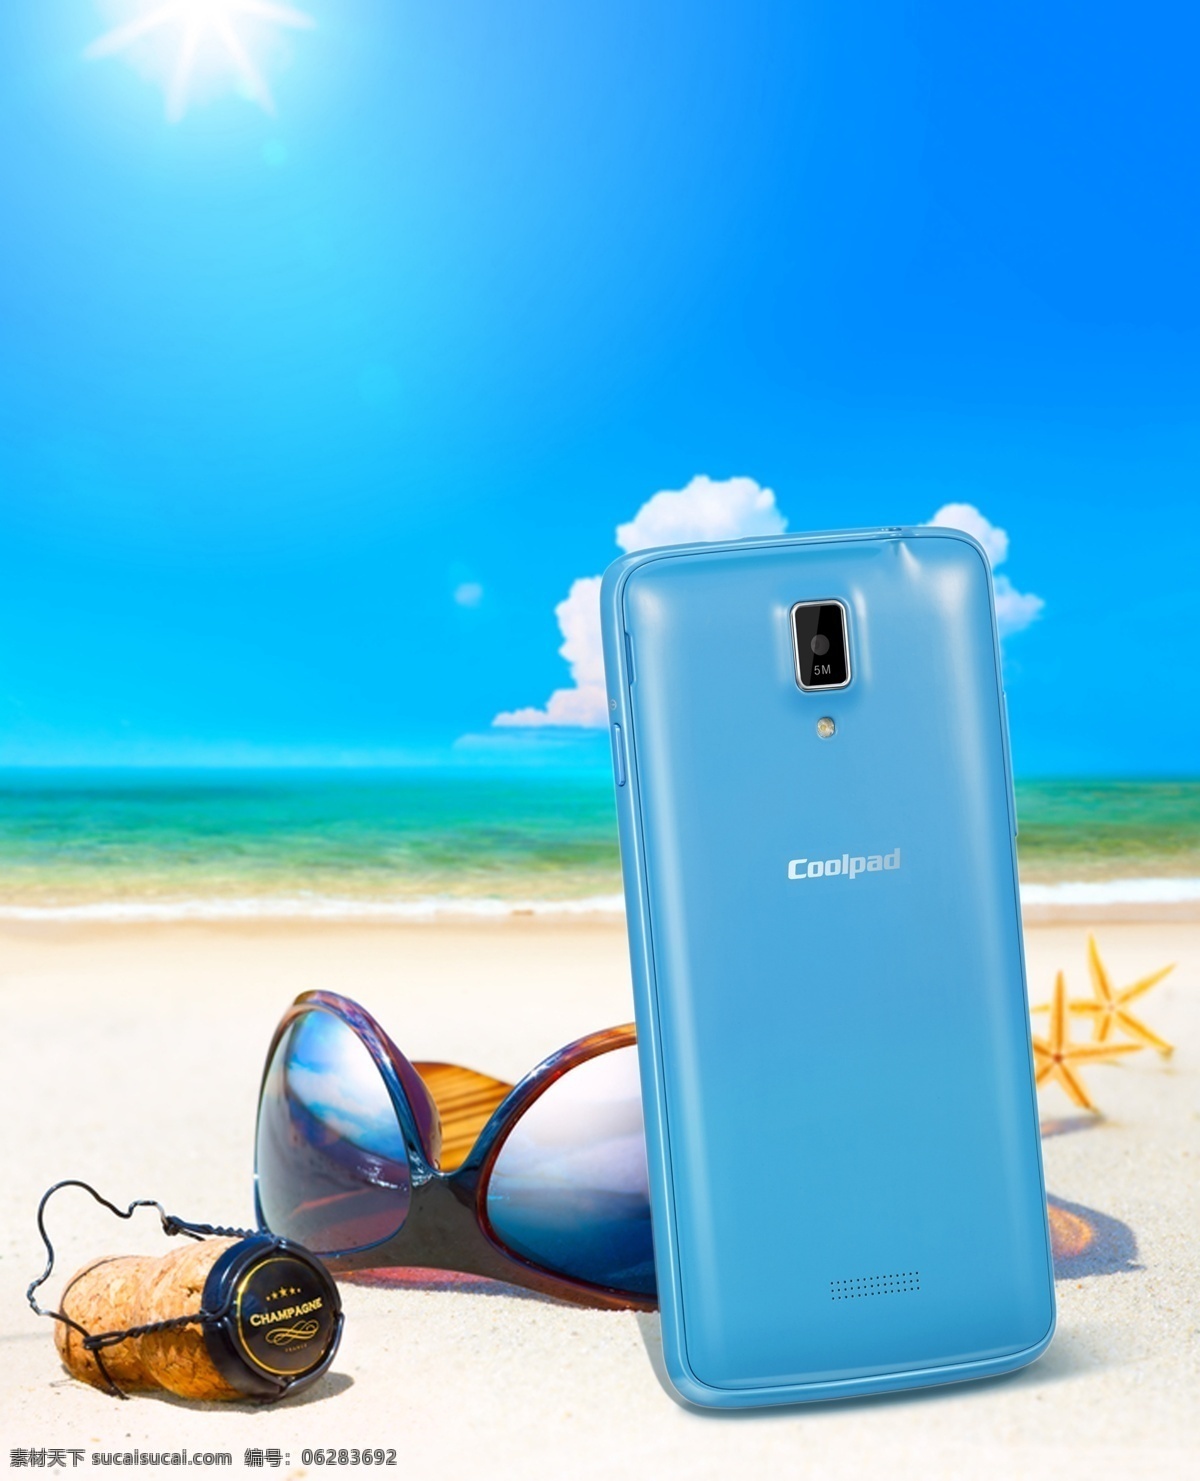 3g 白云 耳机 海星 酷派 蓝色 蓝天 酷 派 设计素材 模板下载 联通 手 手机 天空 沙滩 眼镜 色彩 矢量图 现代科技